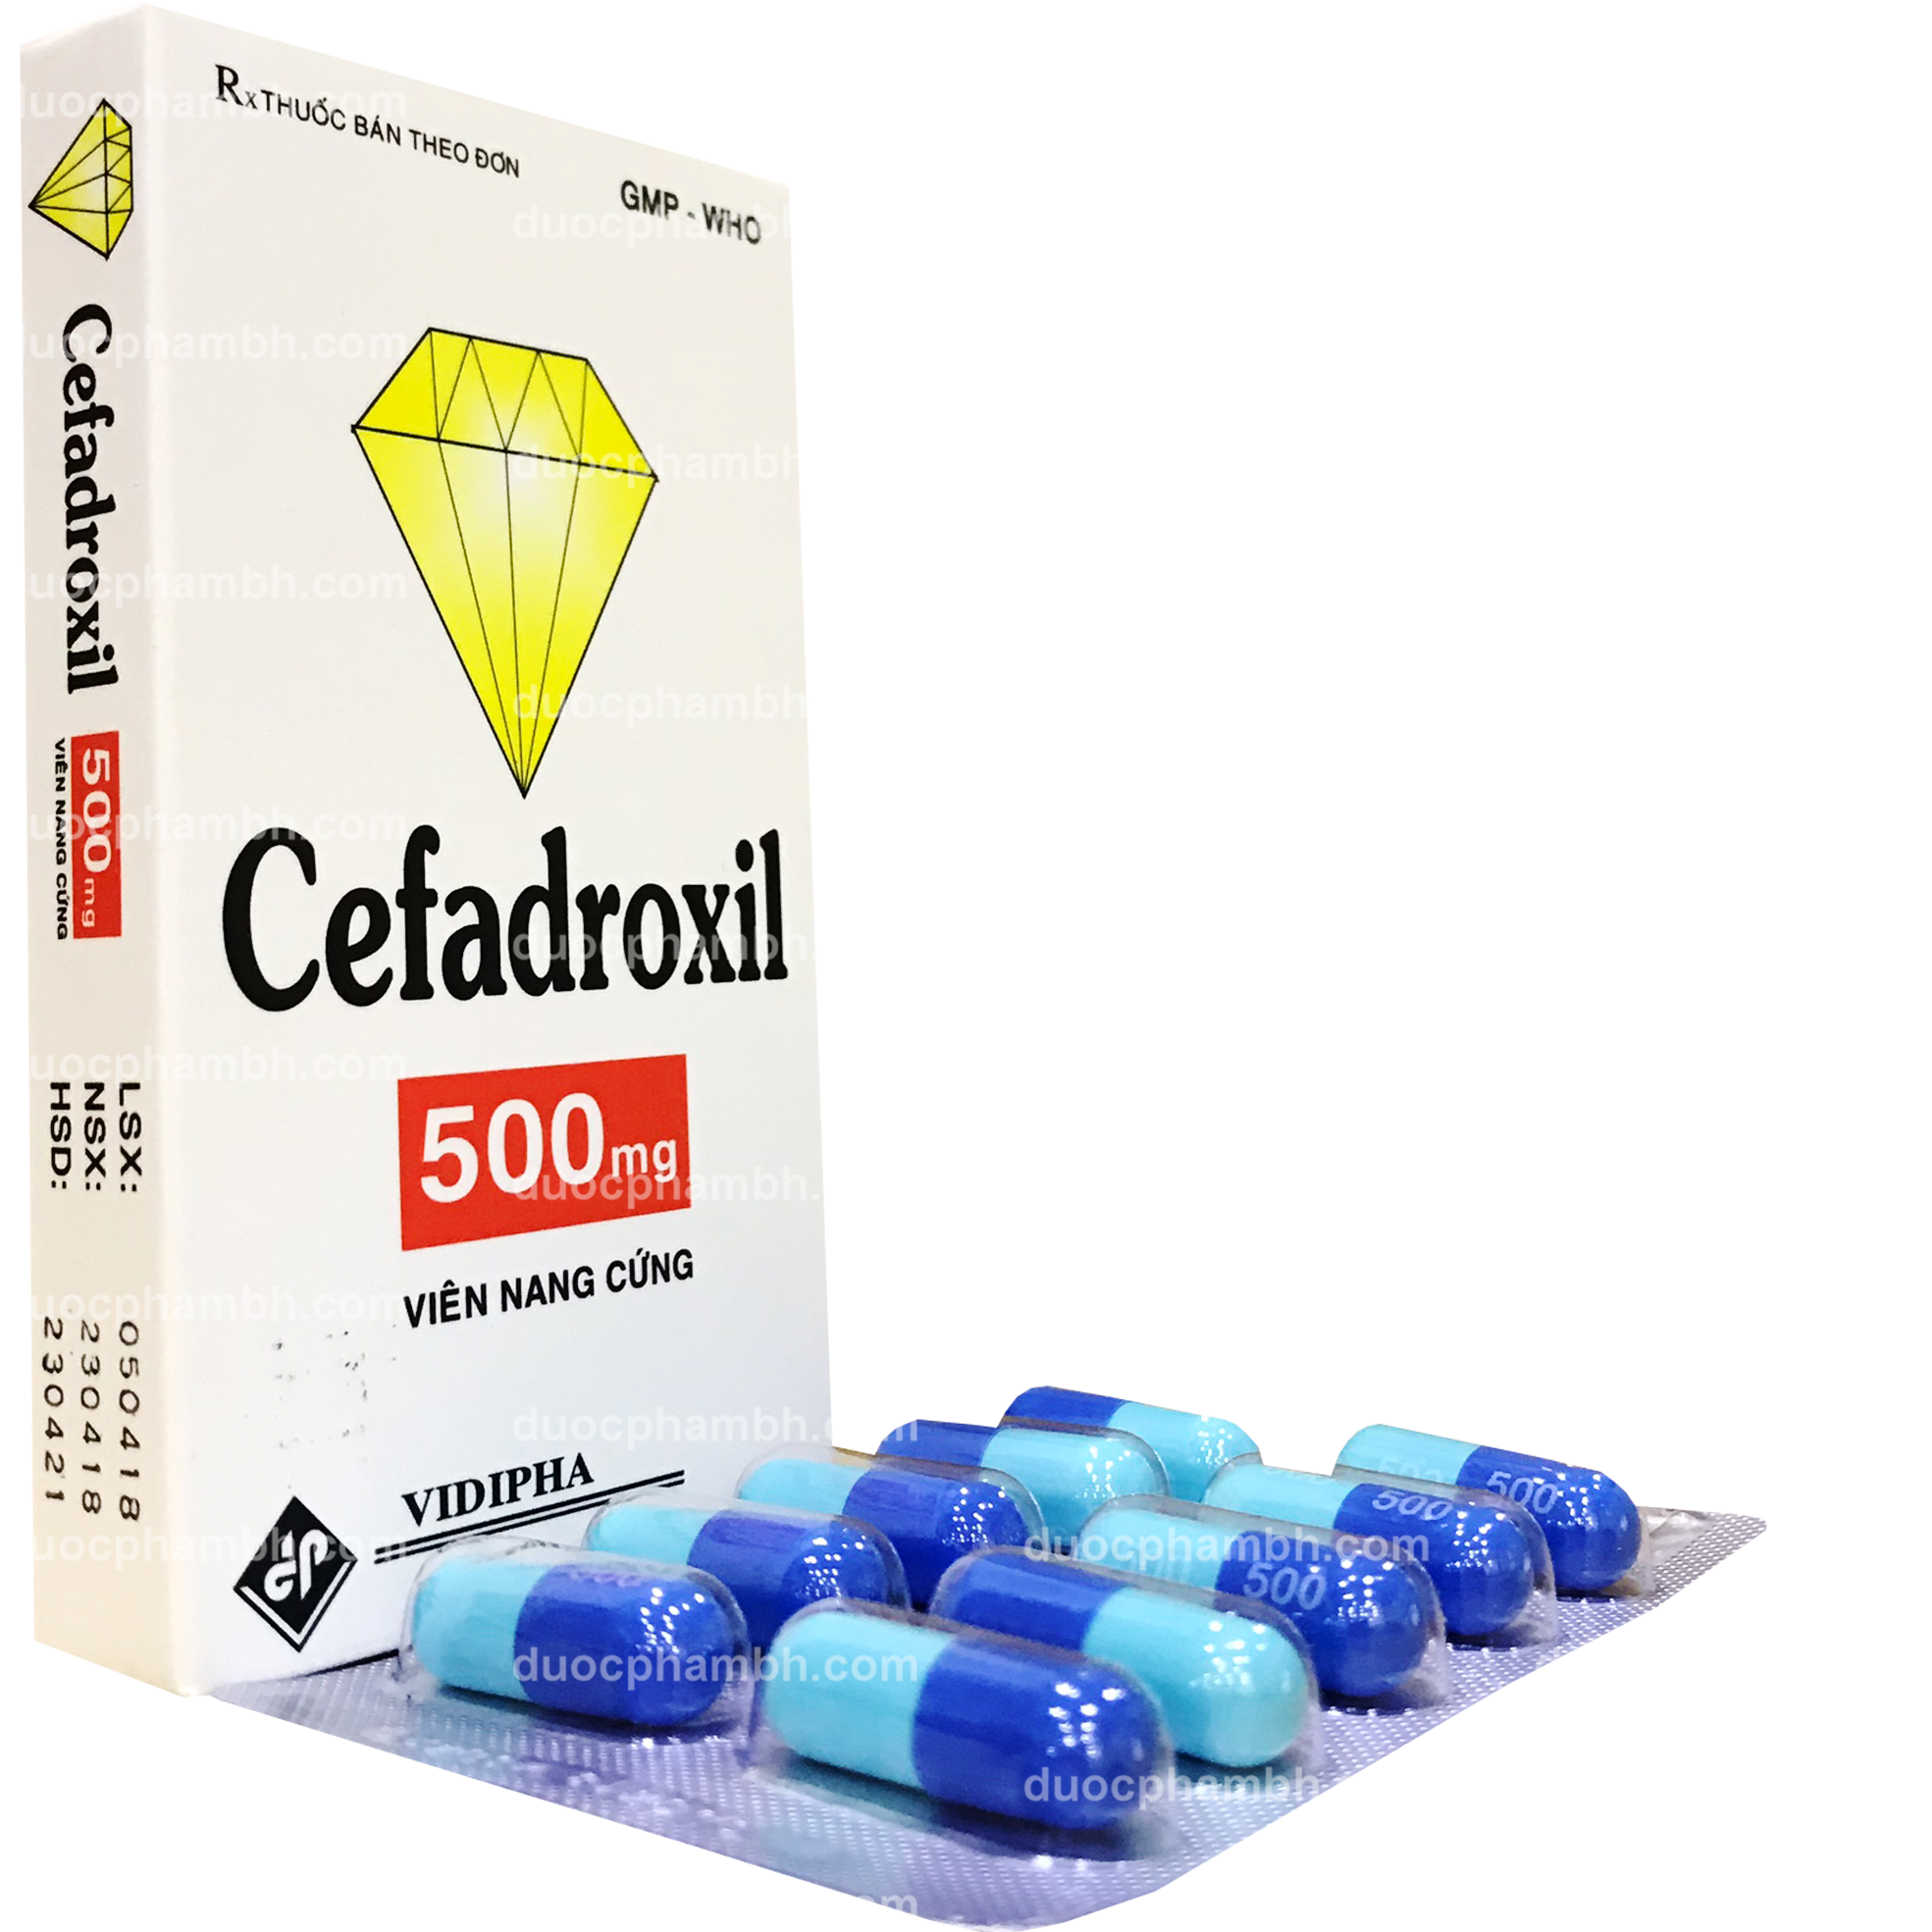 CEFADROXIL 500